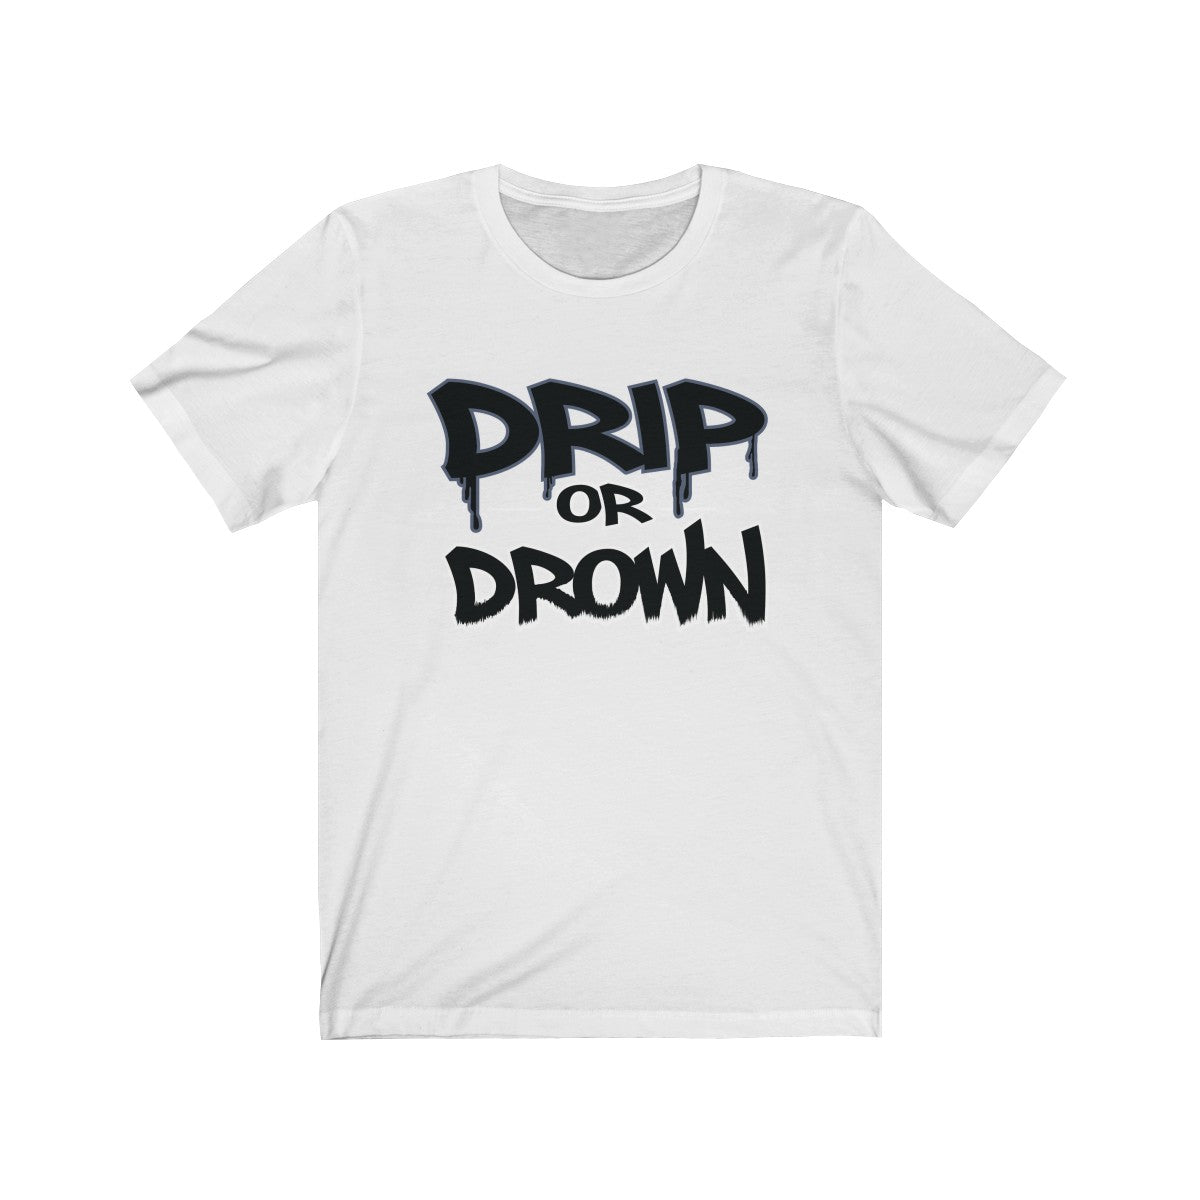 'Drip or Drown' Short Sleeve Tee